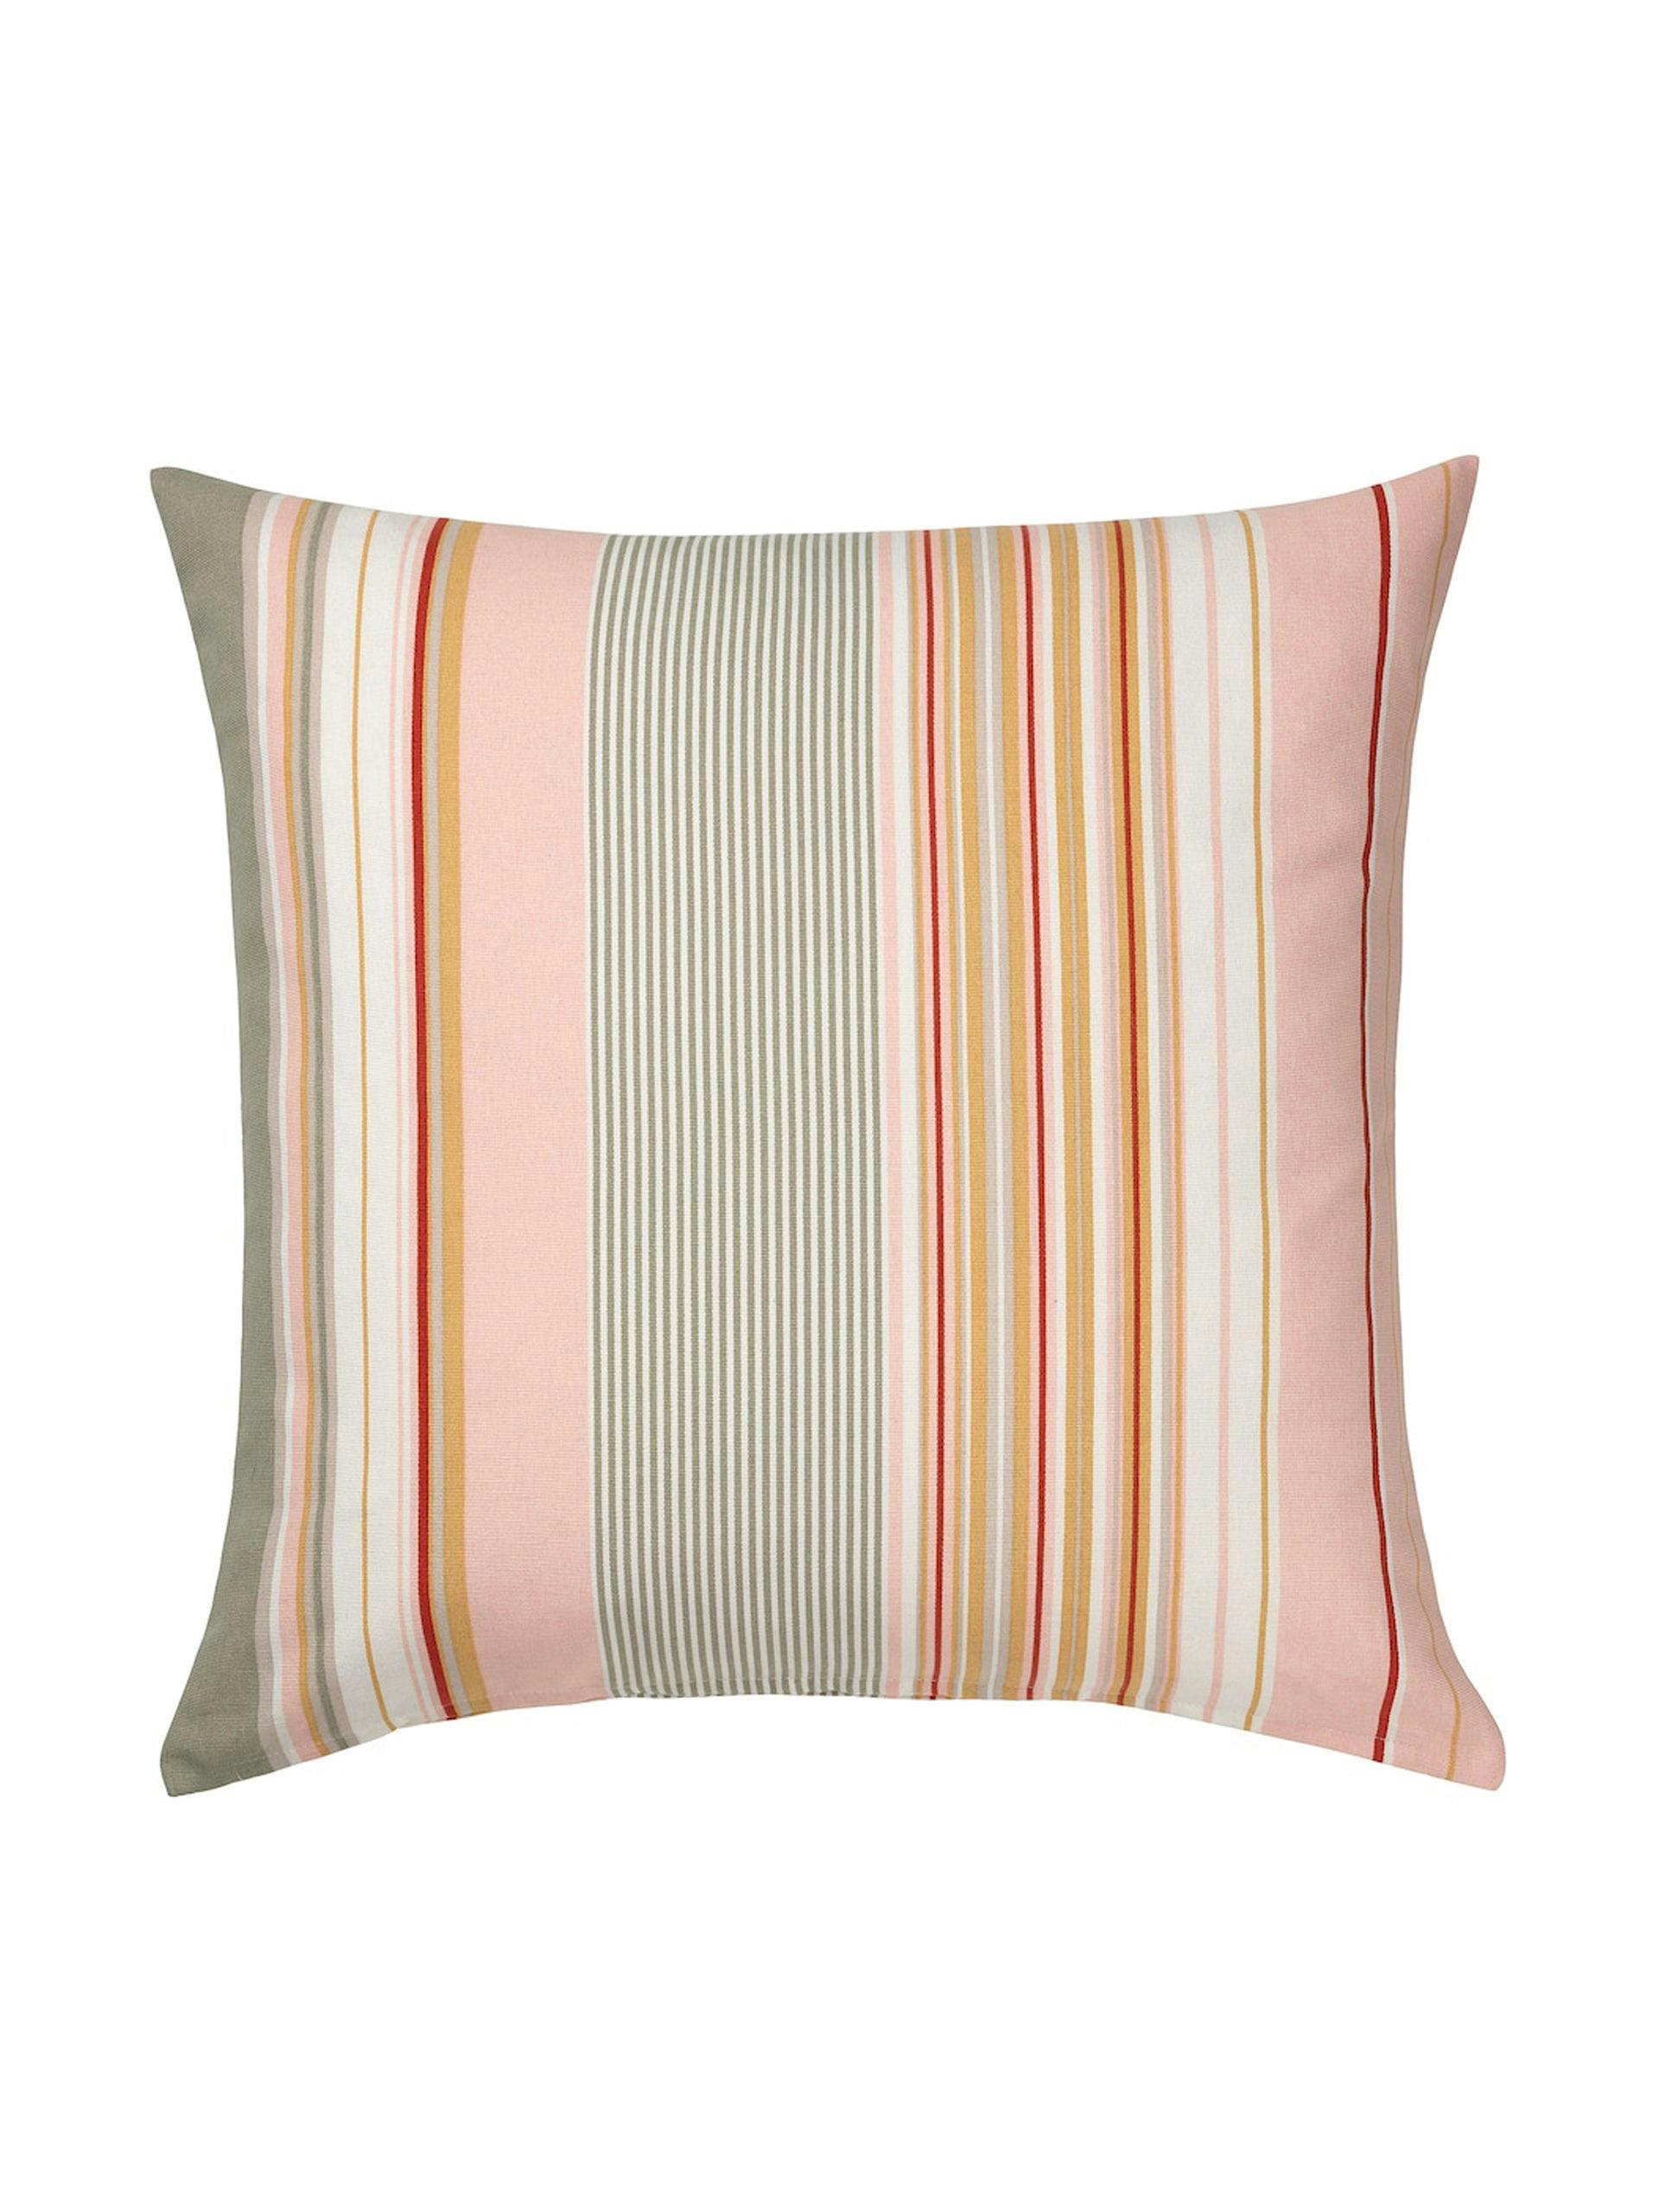 Multi-coloured cushion cover